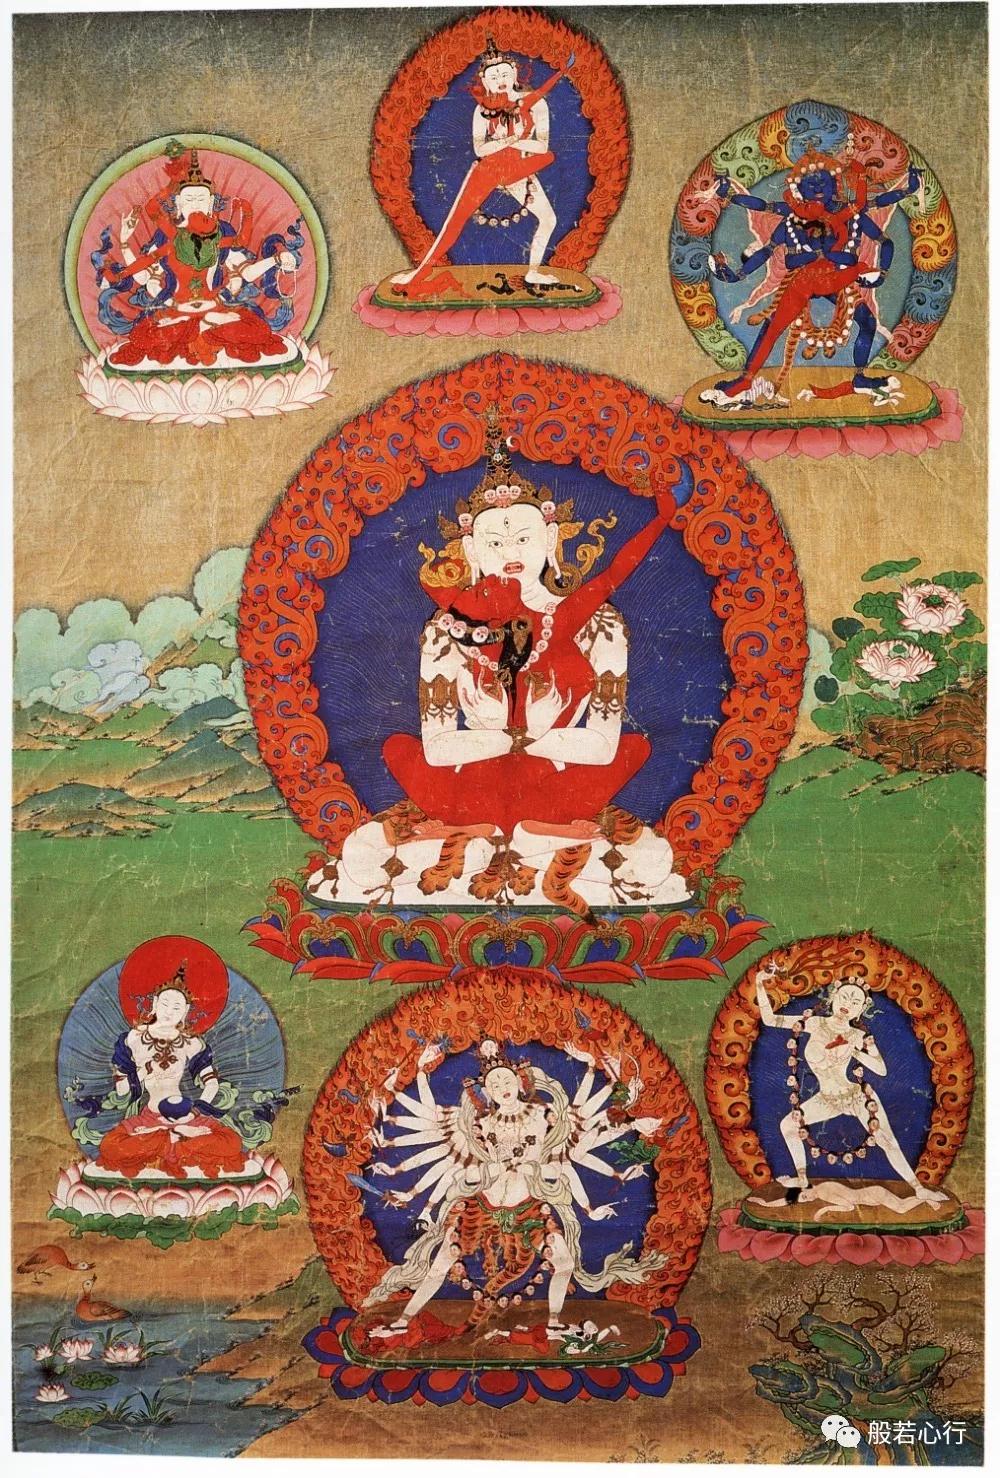 白身胜乐金刚(全)—《极乐之轮:佛教冥想艺术》